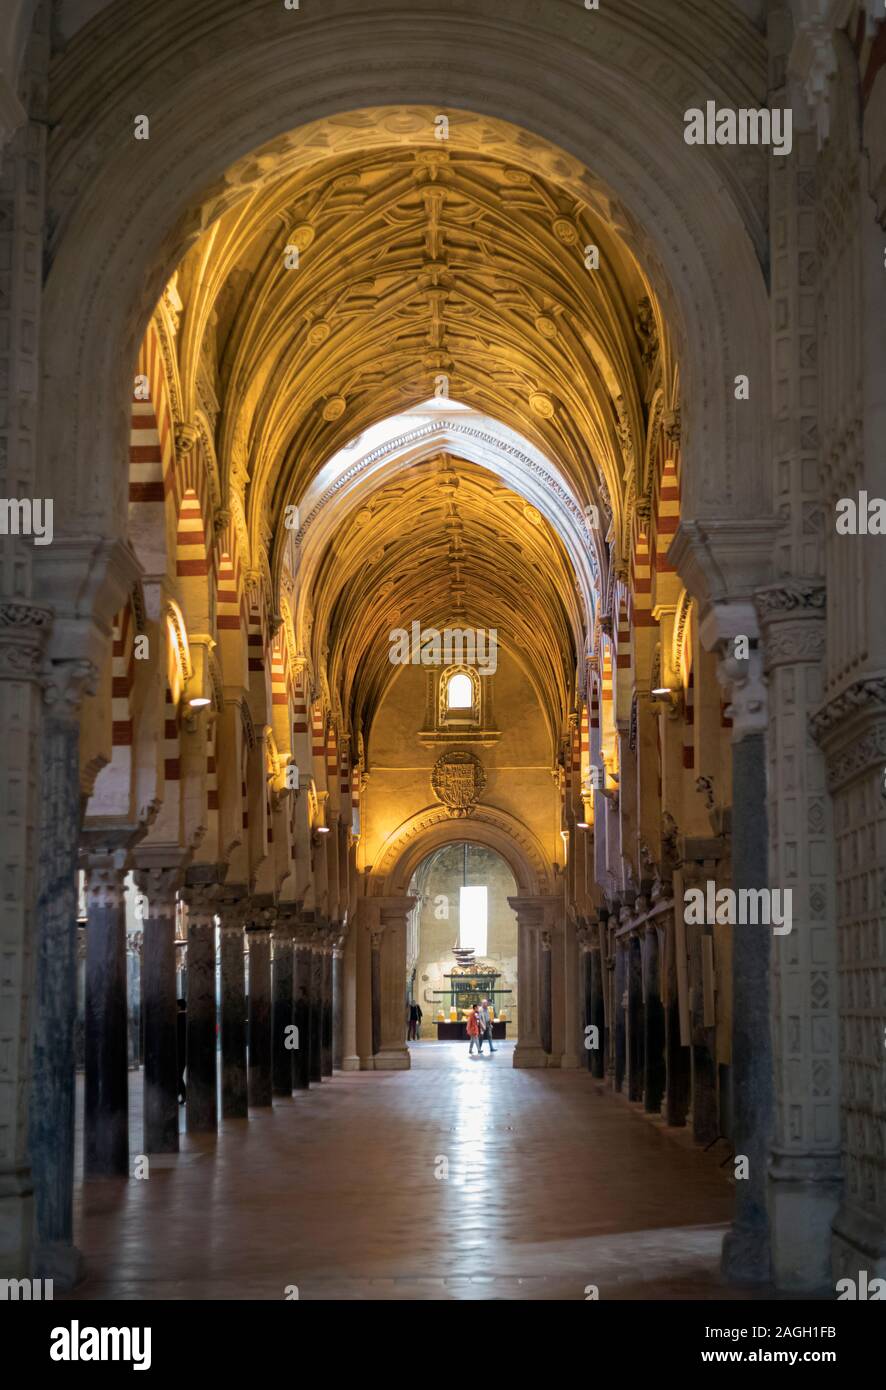 Córdoba, provincia de Córdoba, Andalucía, sur de España. Interior de la mezquita, o a la Mezquita, mostrando una mezcla de estilos arquitectónicos, oriental y w Foto de stock